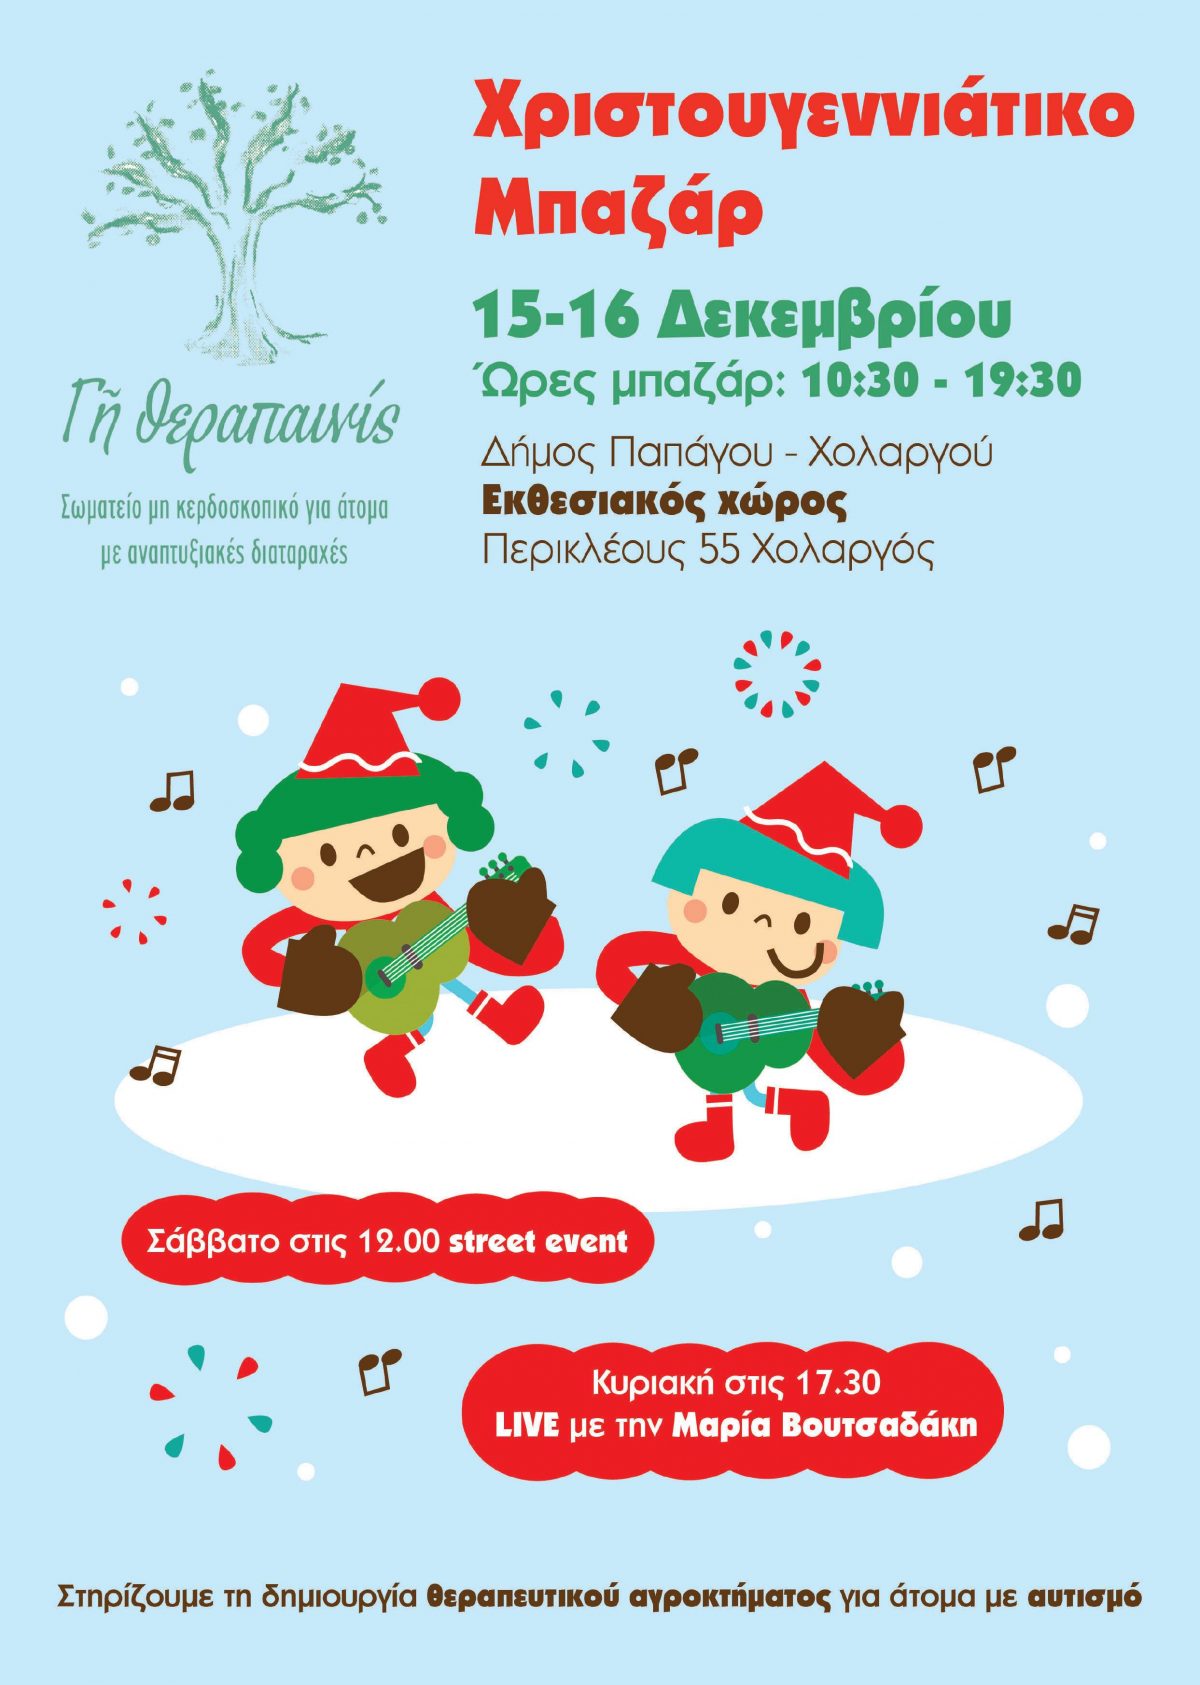 Χριστουγεννιάτικο Μπαζάρ 15 &16 Δεκεμβρίου  (10.30-19.30) Δημαρχείο Παπάγου Χολαργού